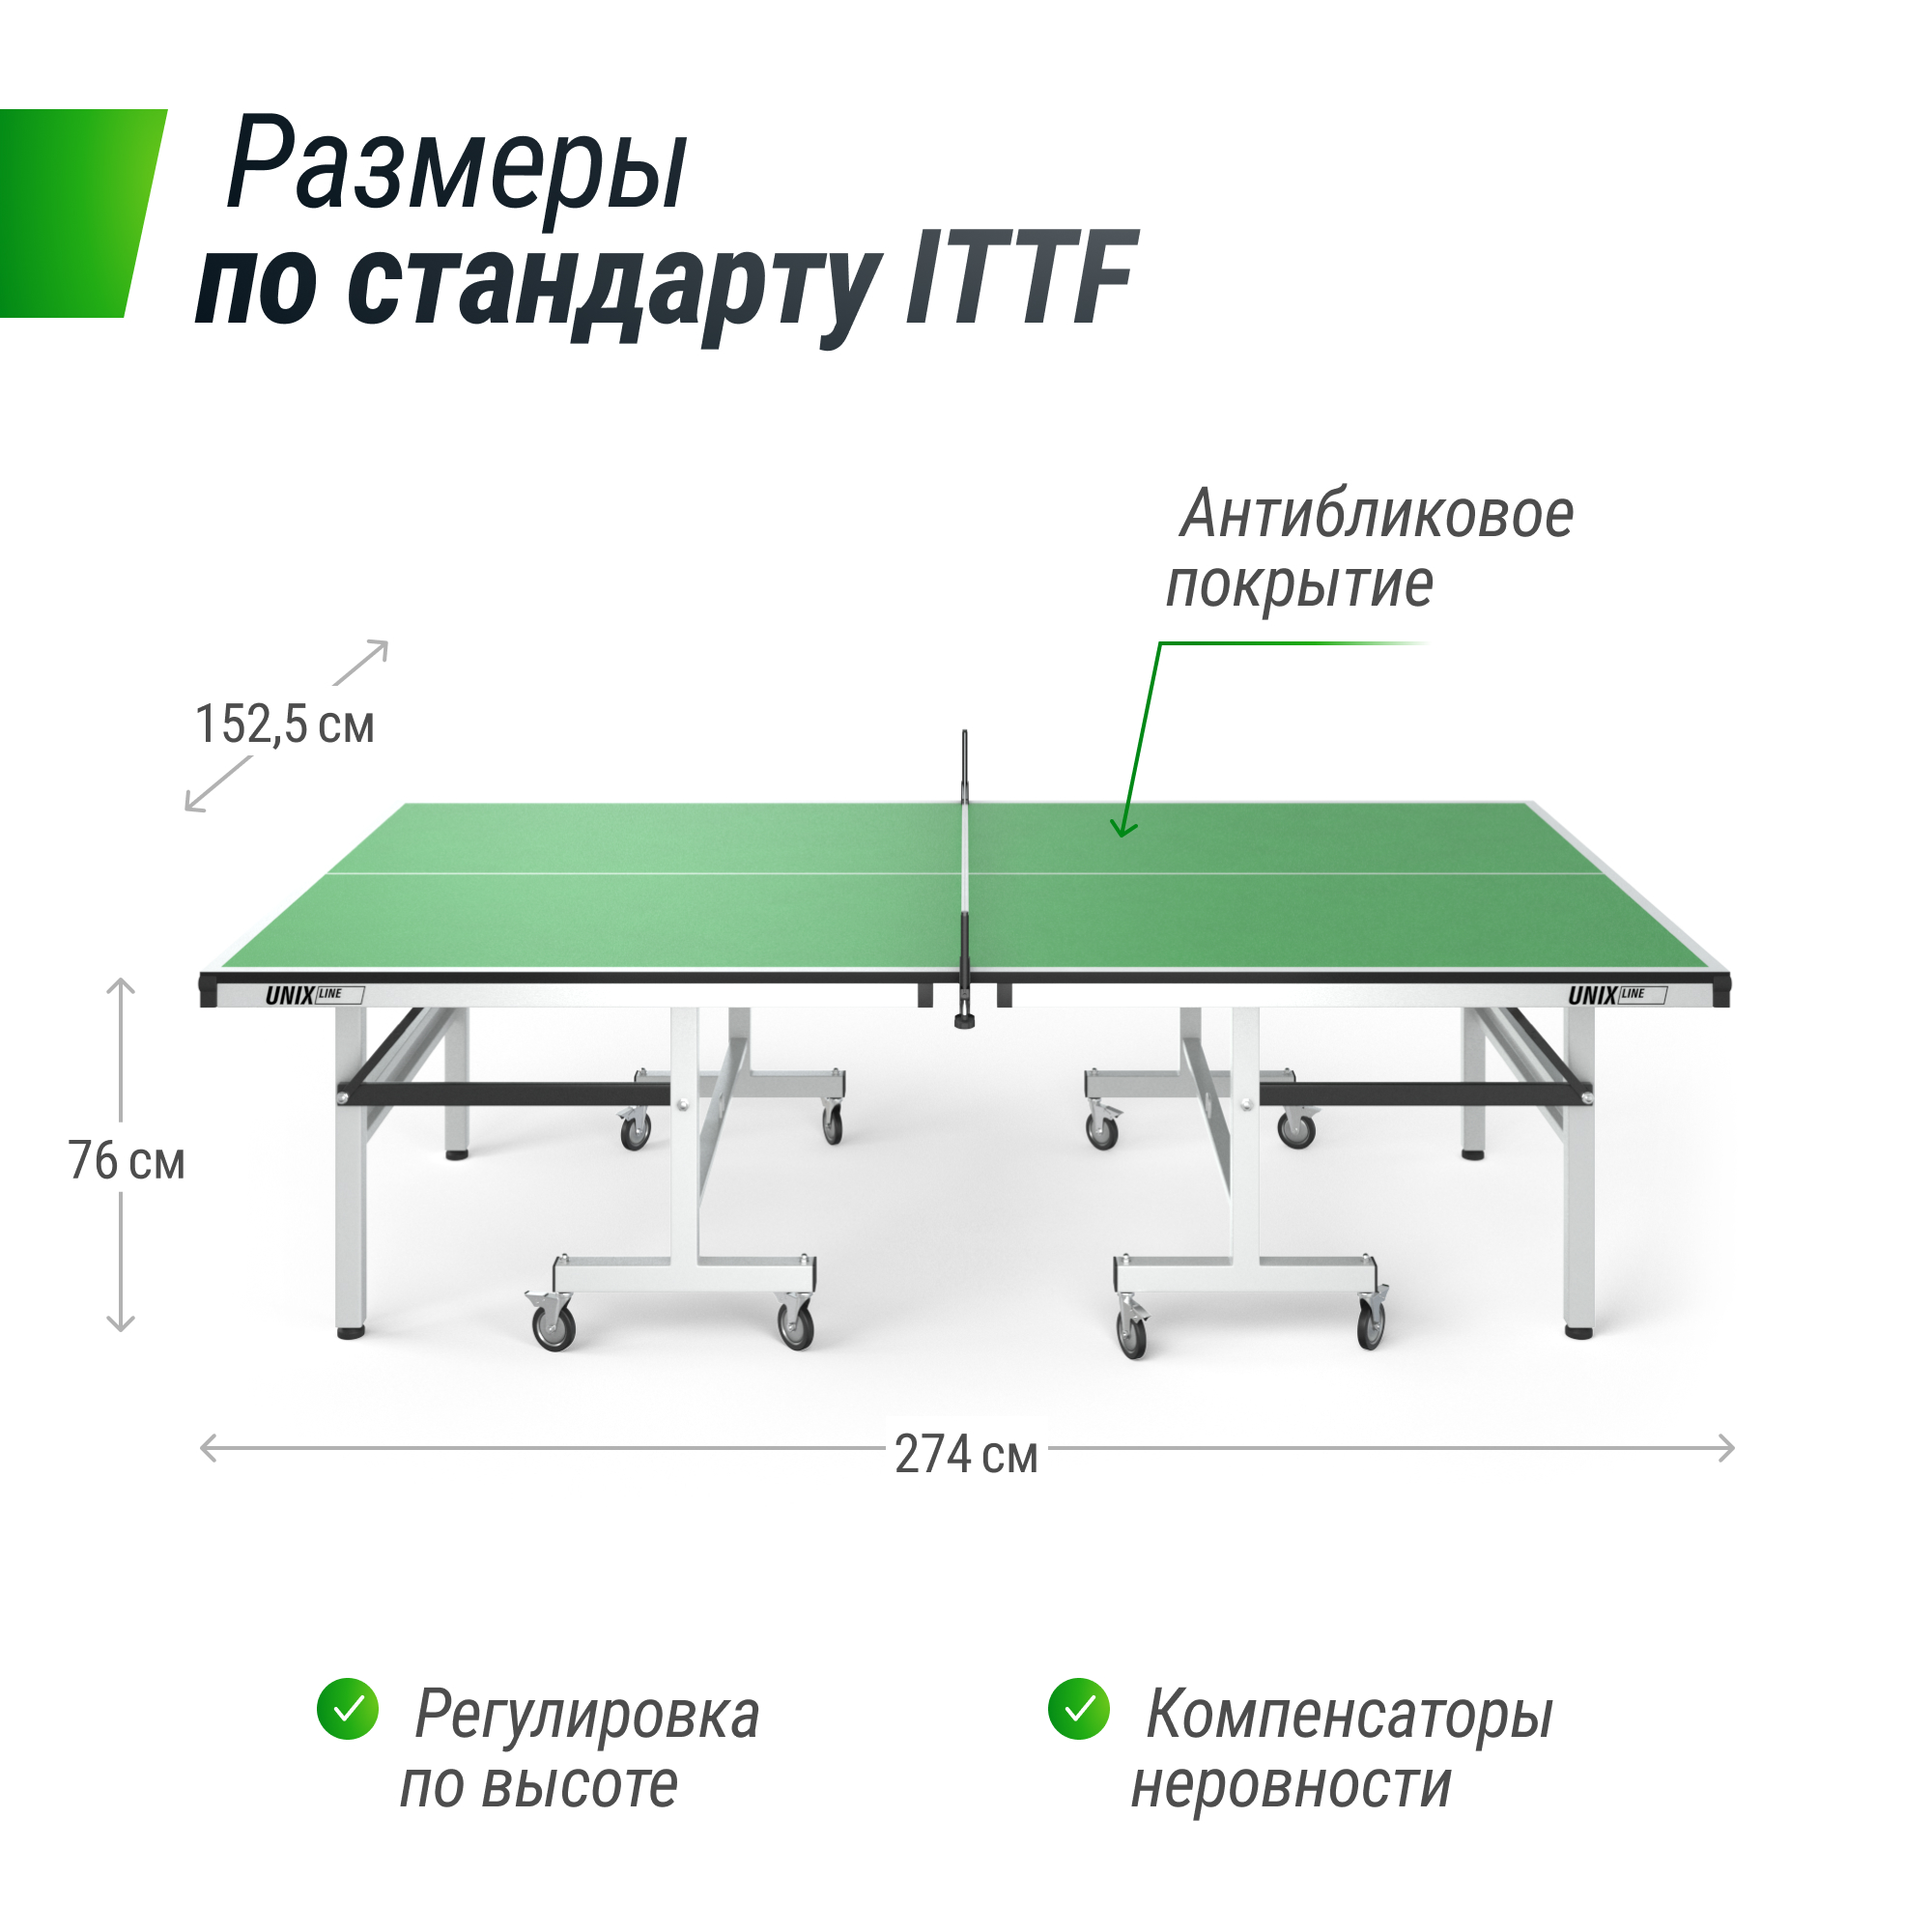 Профессиональный теннисный стол UNIX Line 25 mm MDF (Green) - 4 